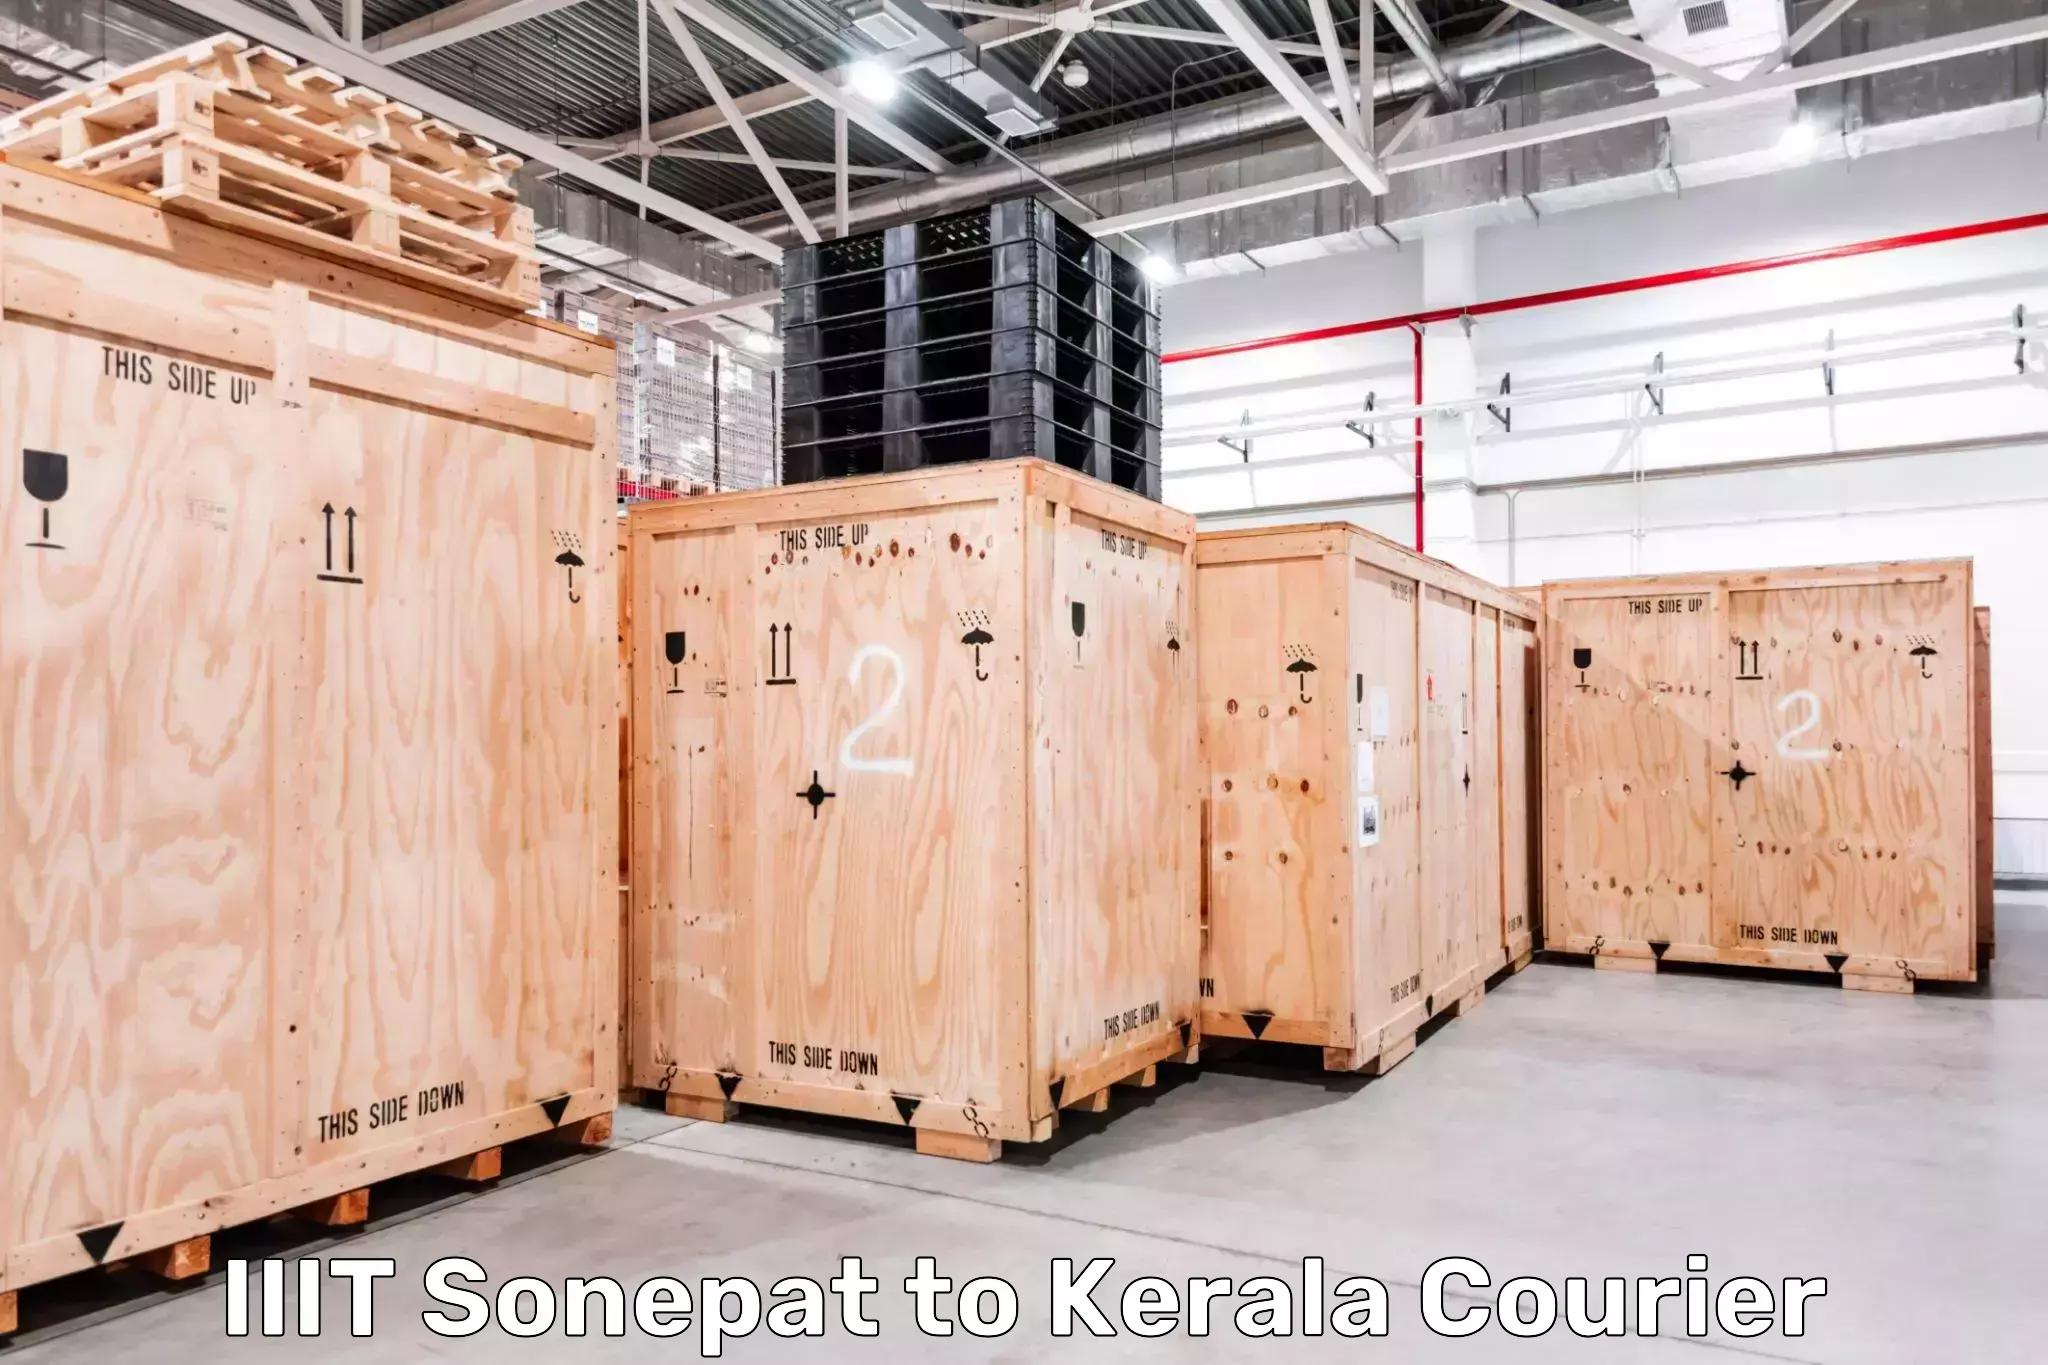 Ocean freight courier IIIT Sonepat to Kerala